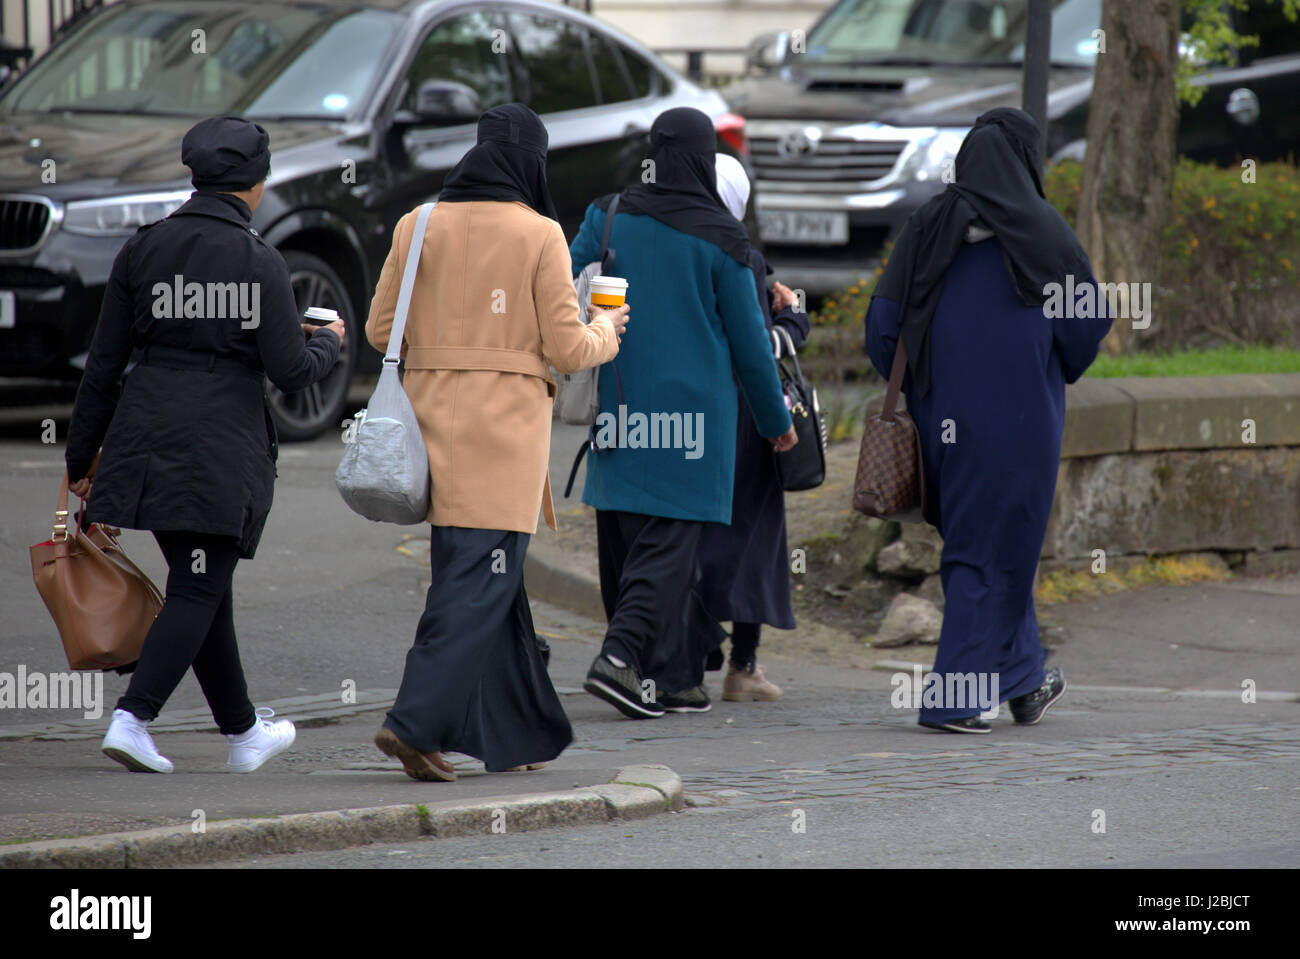 Des réfugiés africains asiatiques habillés burqa Hijab foulard sur street au Royaume-Uni scène quotidienne cinq jeunes filles marcher dans la foule de boire du café Banque D'Images